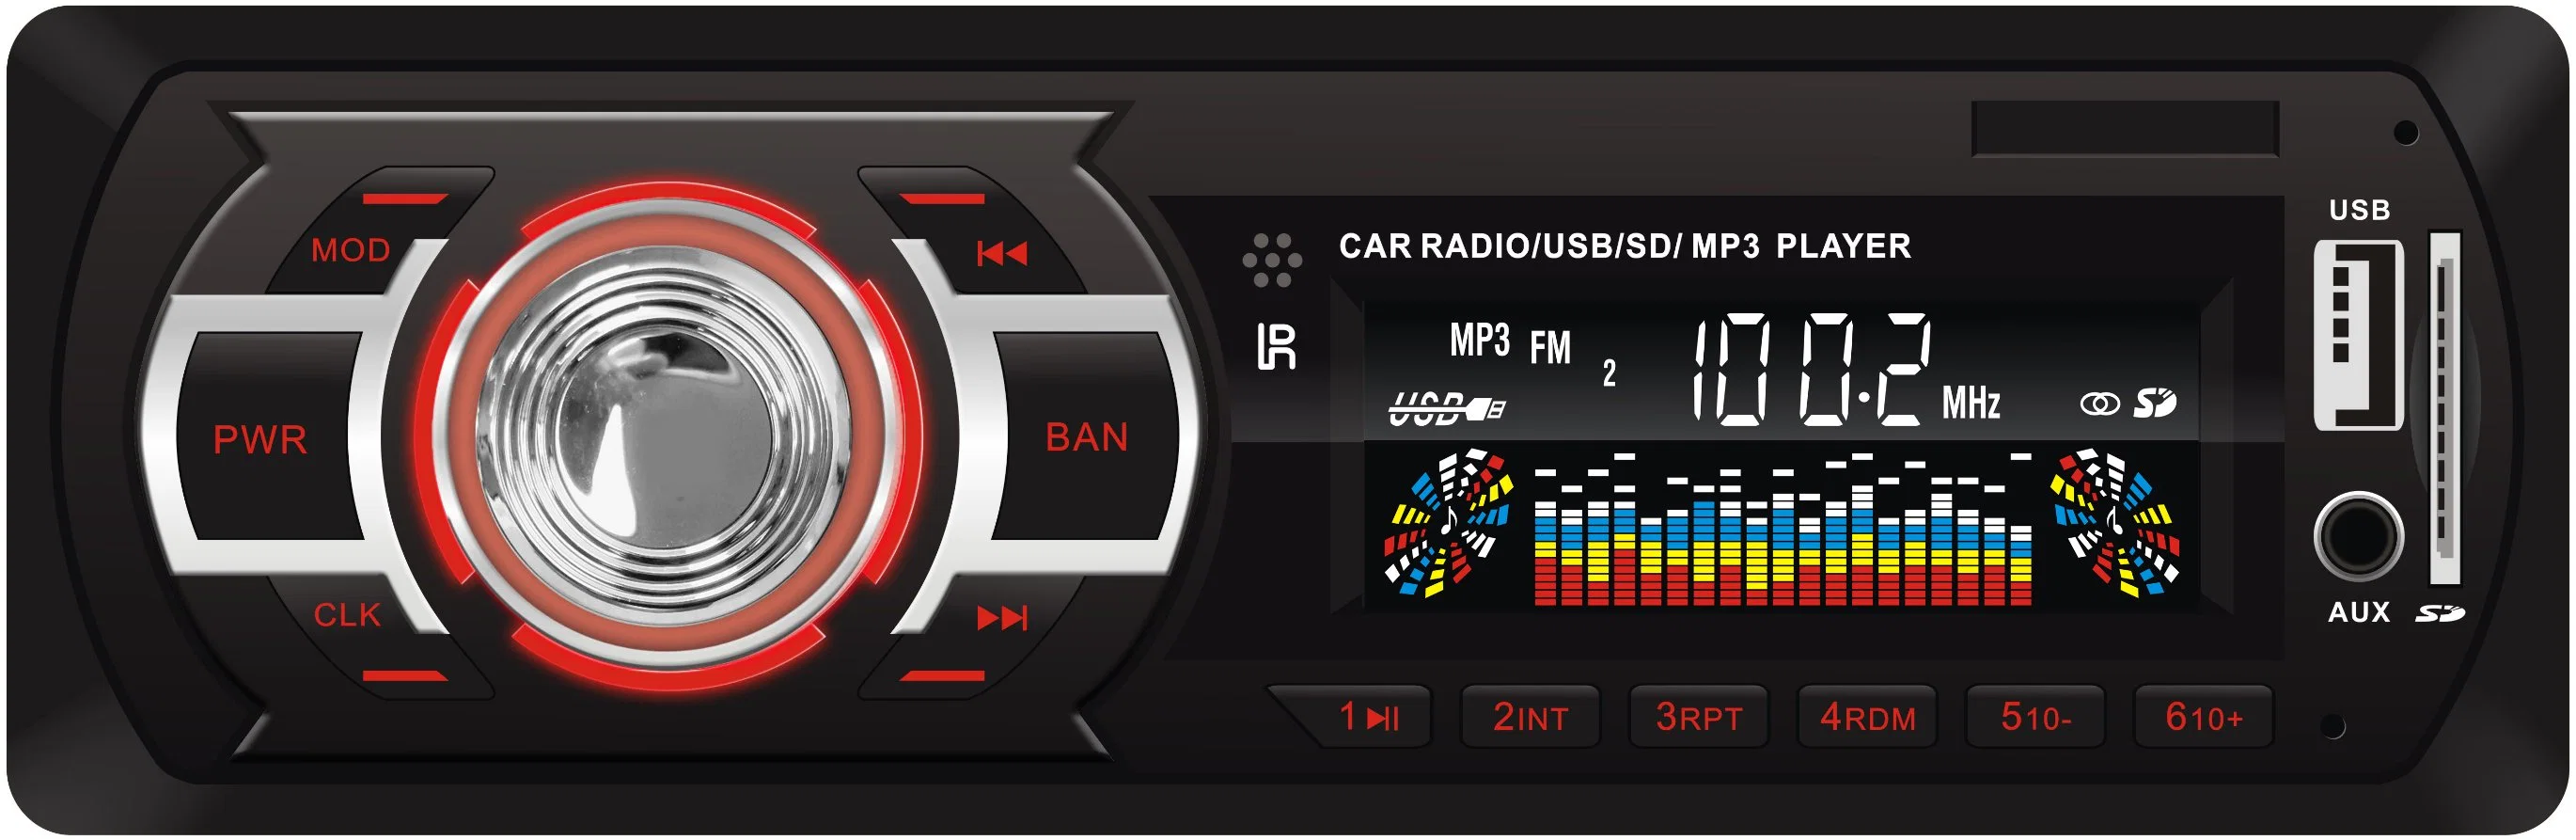 Высокое качество салонной стереосистемы авто радио MP3 SD Aux USB